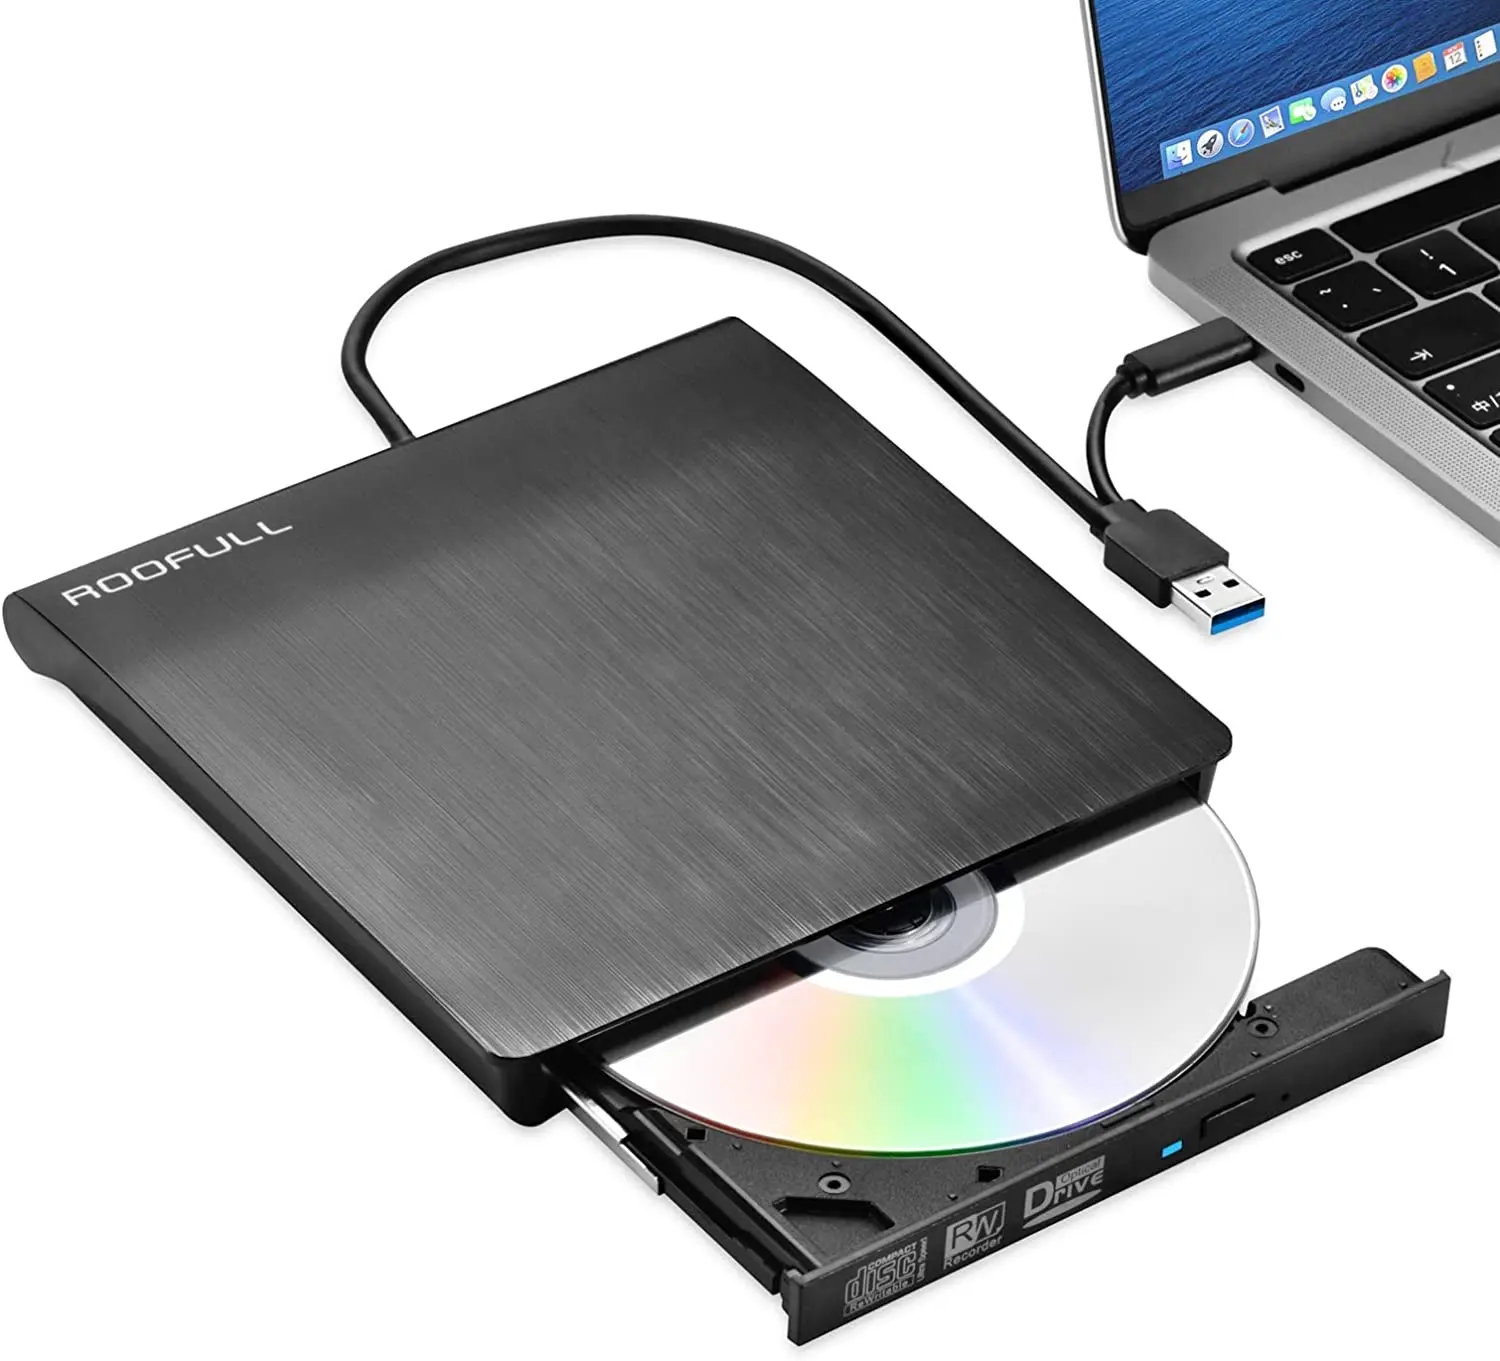 محرك أقراص CD dvw خارجي USB3.0 w قارئ مشغل الموقد للكمبيوتر المحمول جودة عالية حار بيع مربع لون نحيف دعم OEM